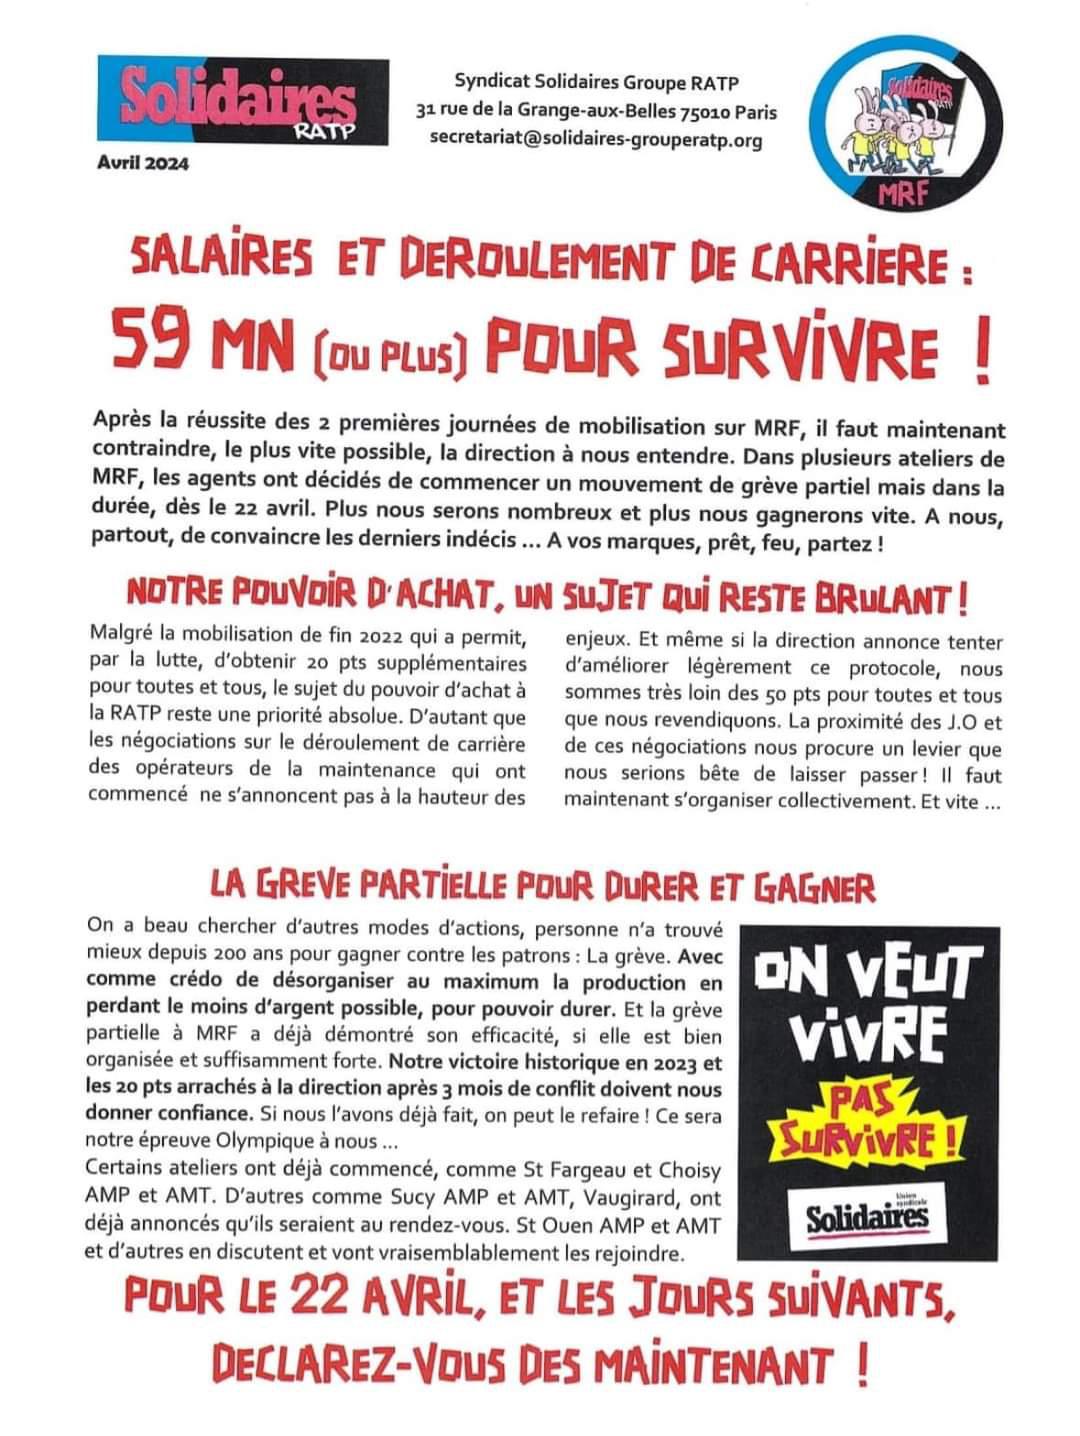 Solidaires RATP // Salaires et déroulement de carrière, 59 mn pour survivre !